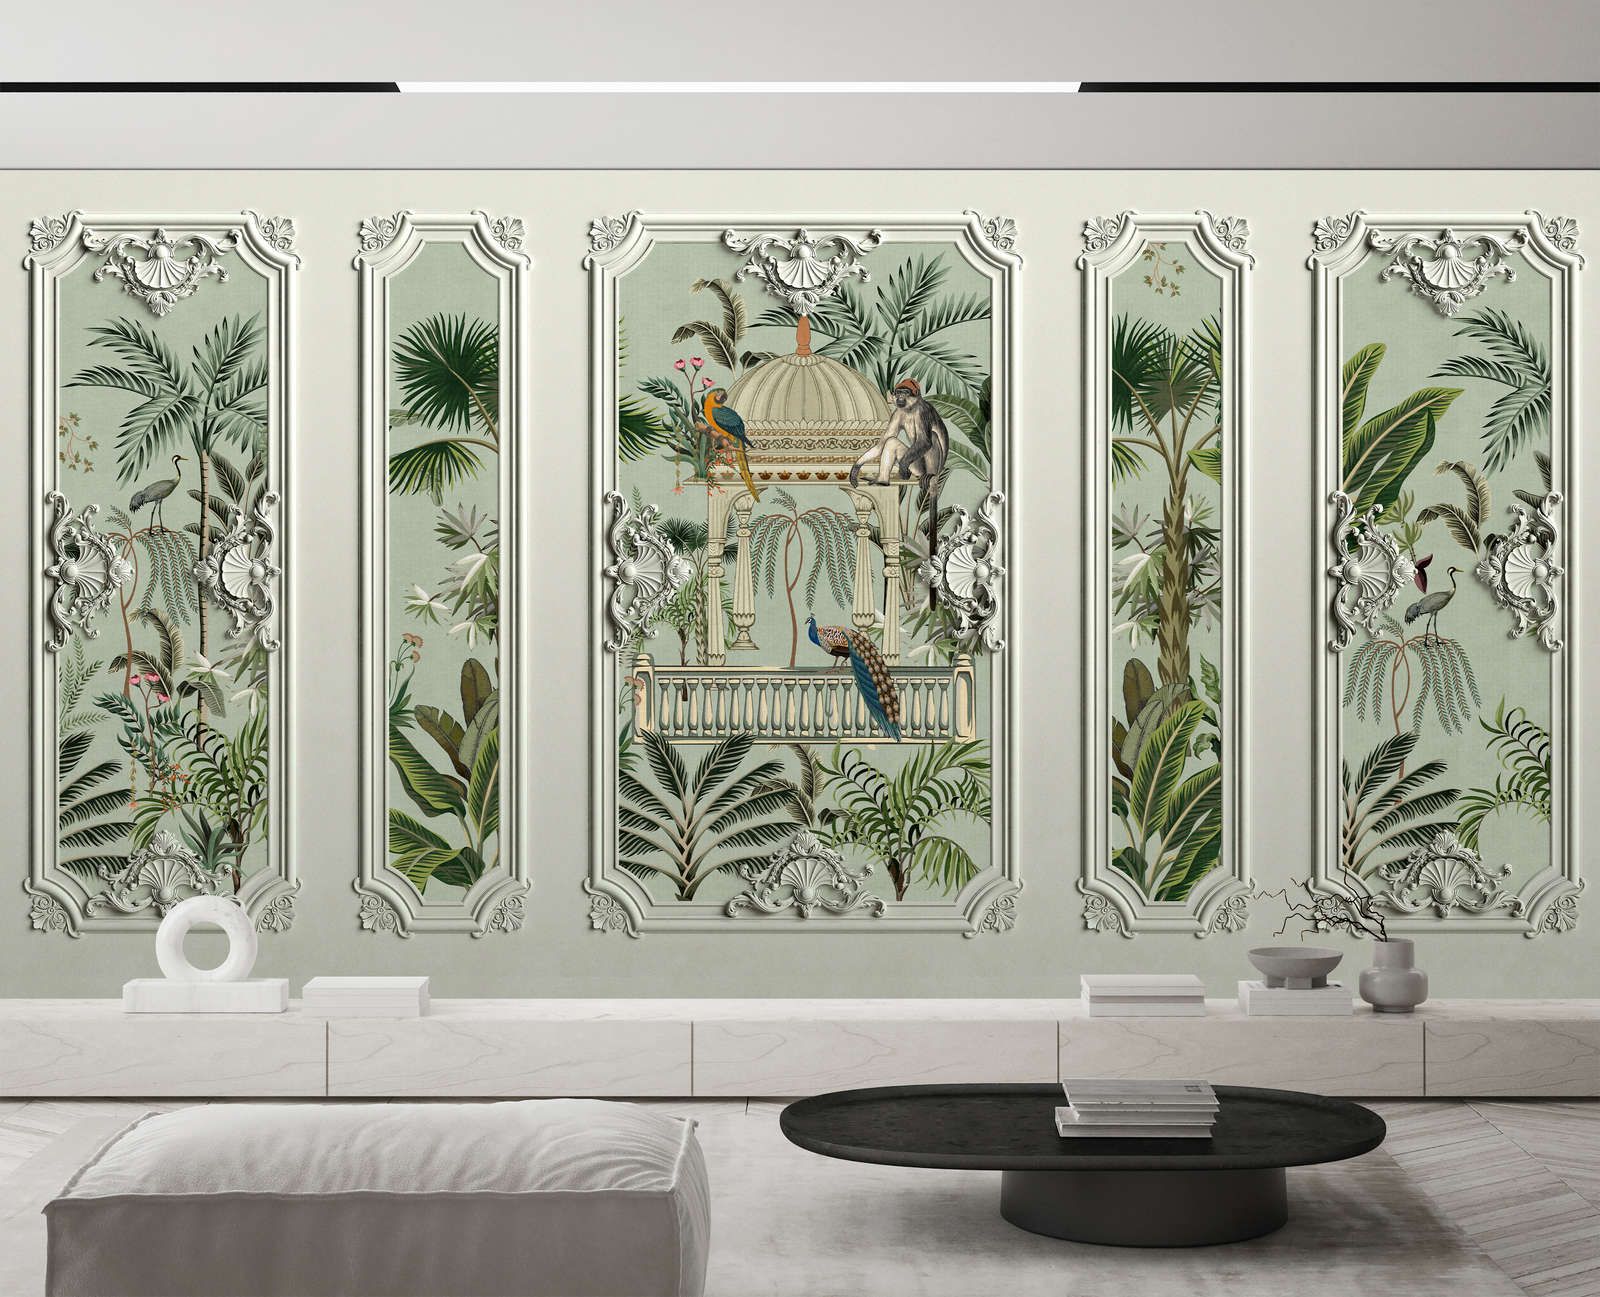             Fotomurali »darjeeling« - Cornice in stucco con uccelli e palme con texture in lino sullo sfondo - Materiali non tessuto liscio e leggermente perlato
        